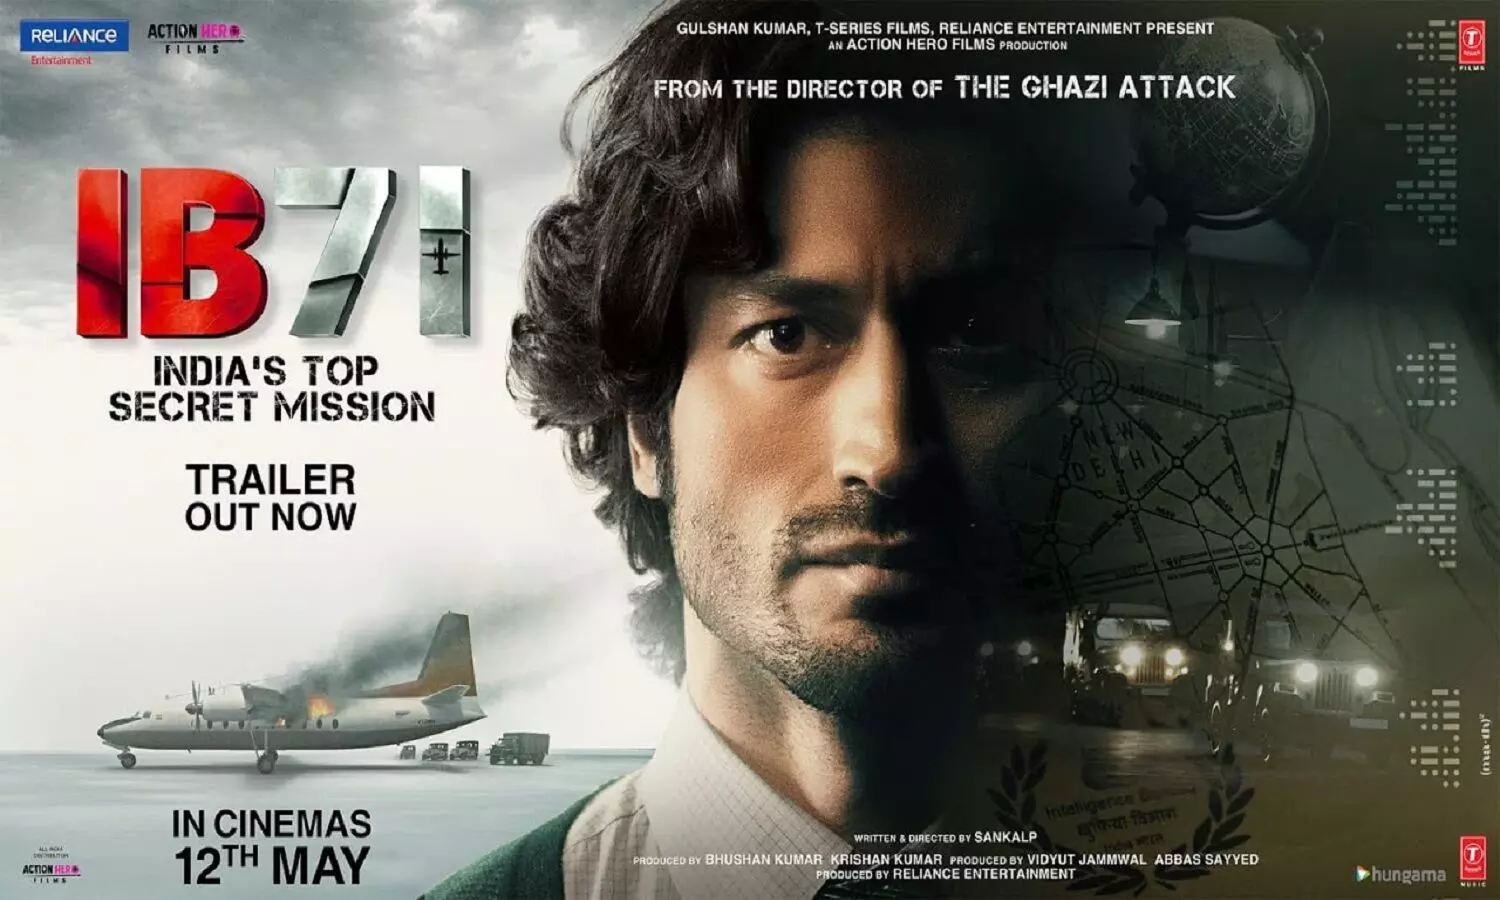 IB 71 Film Review In Hindi: विद्युत जामवाल की IB 71 का मूवी रिव्यू